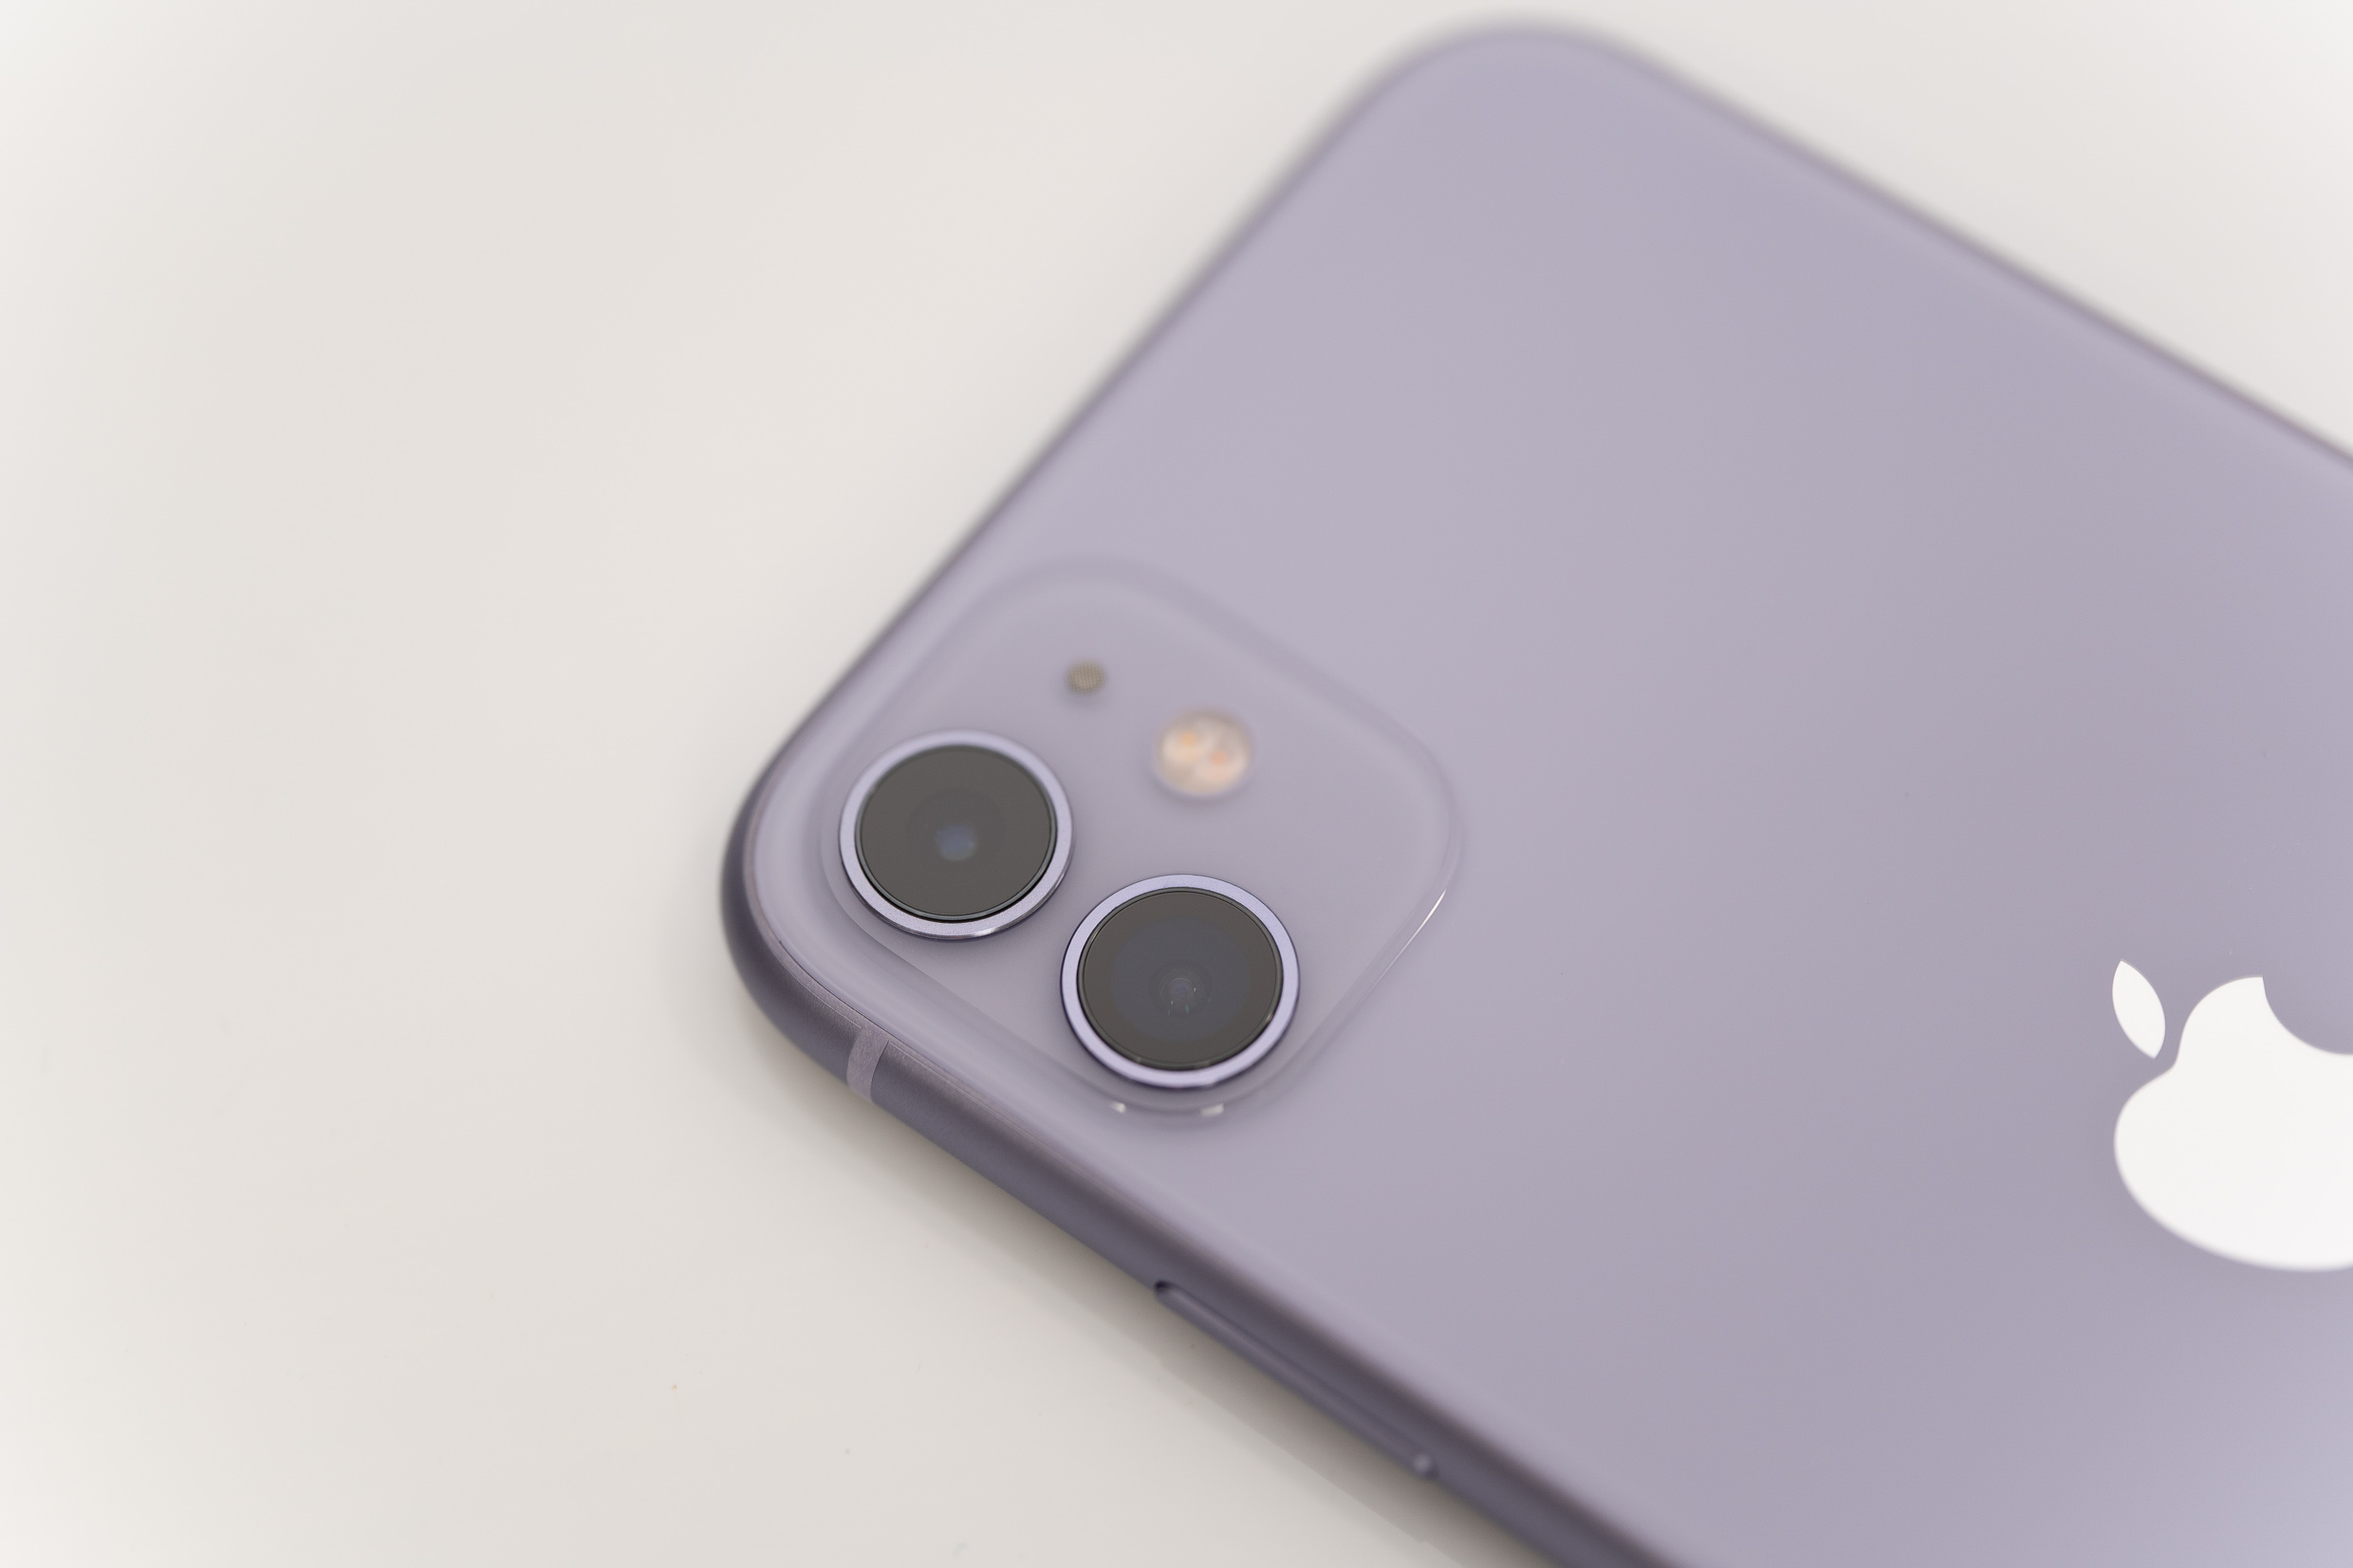 iPhone史上初の「紫」登場、iPhone 11のパープルが想像以上に良い色 